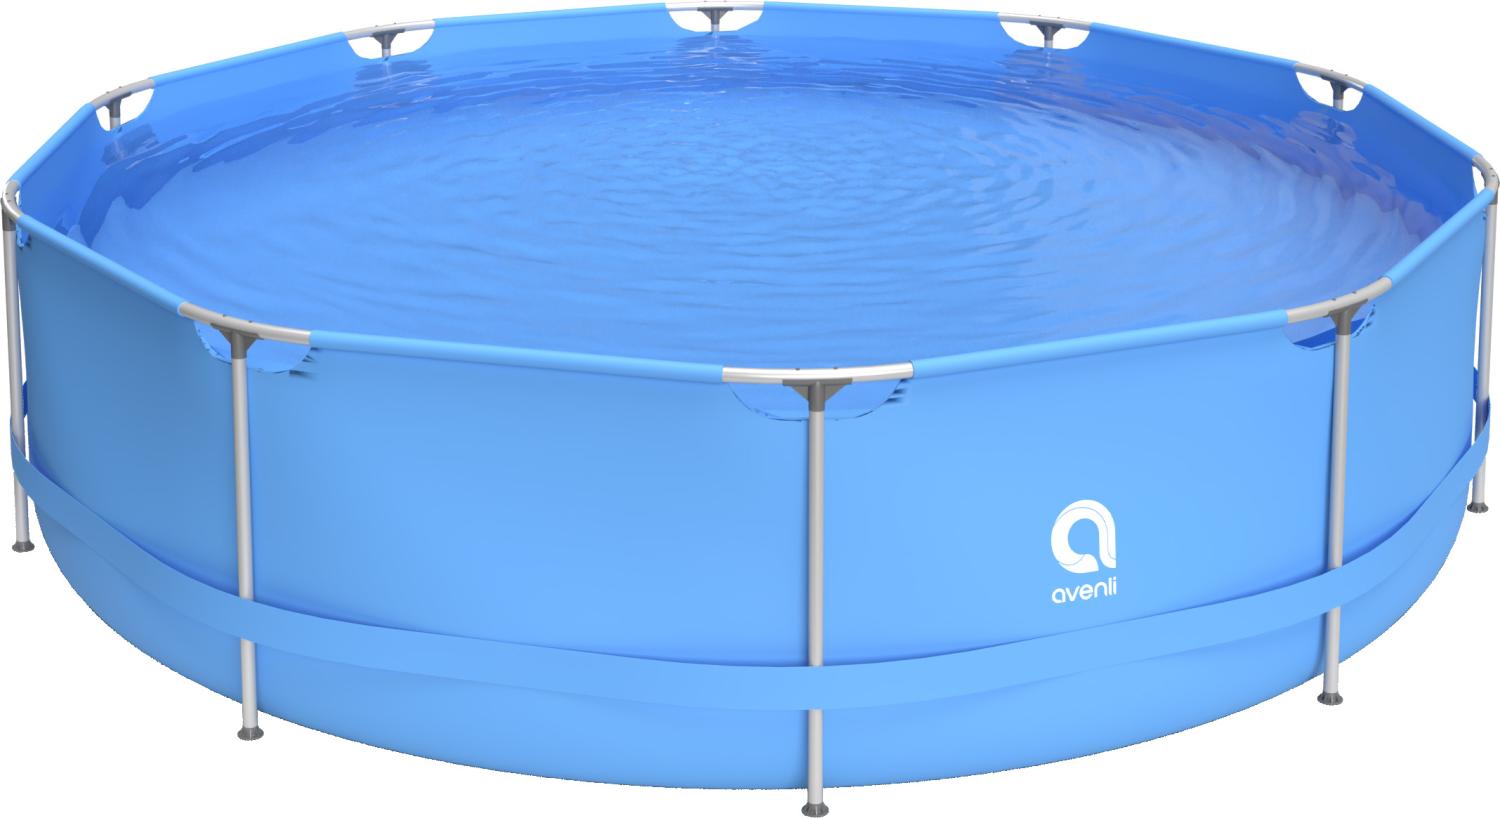 Avenli Frame Pool 360 x 76 cm, Aufstellpool rund, ohne Pumpe, blau Bild 1